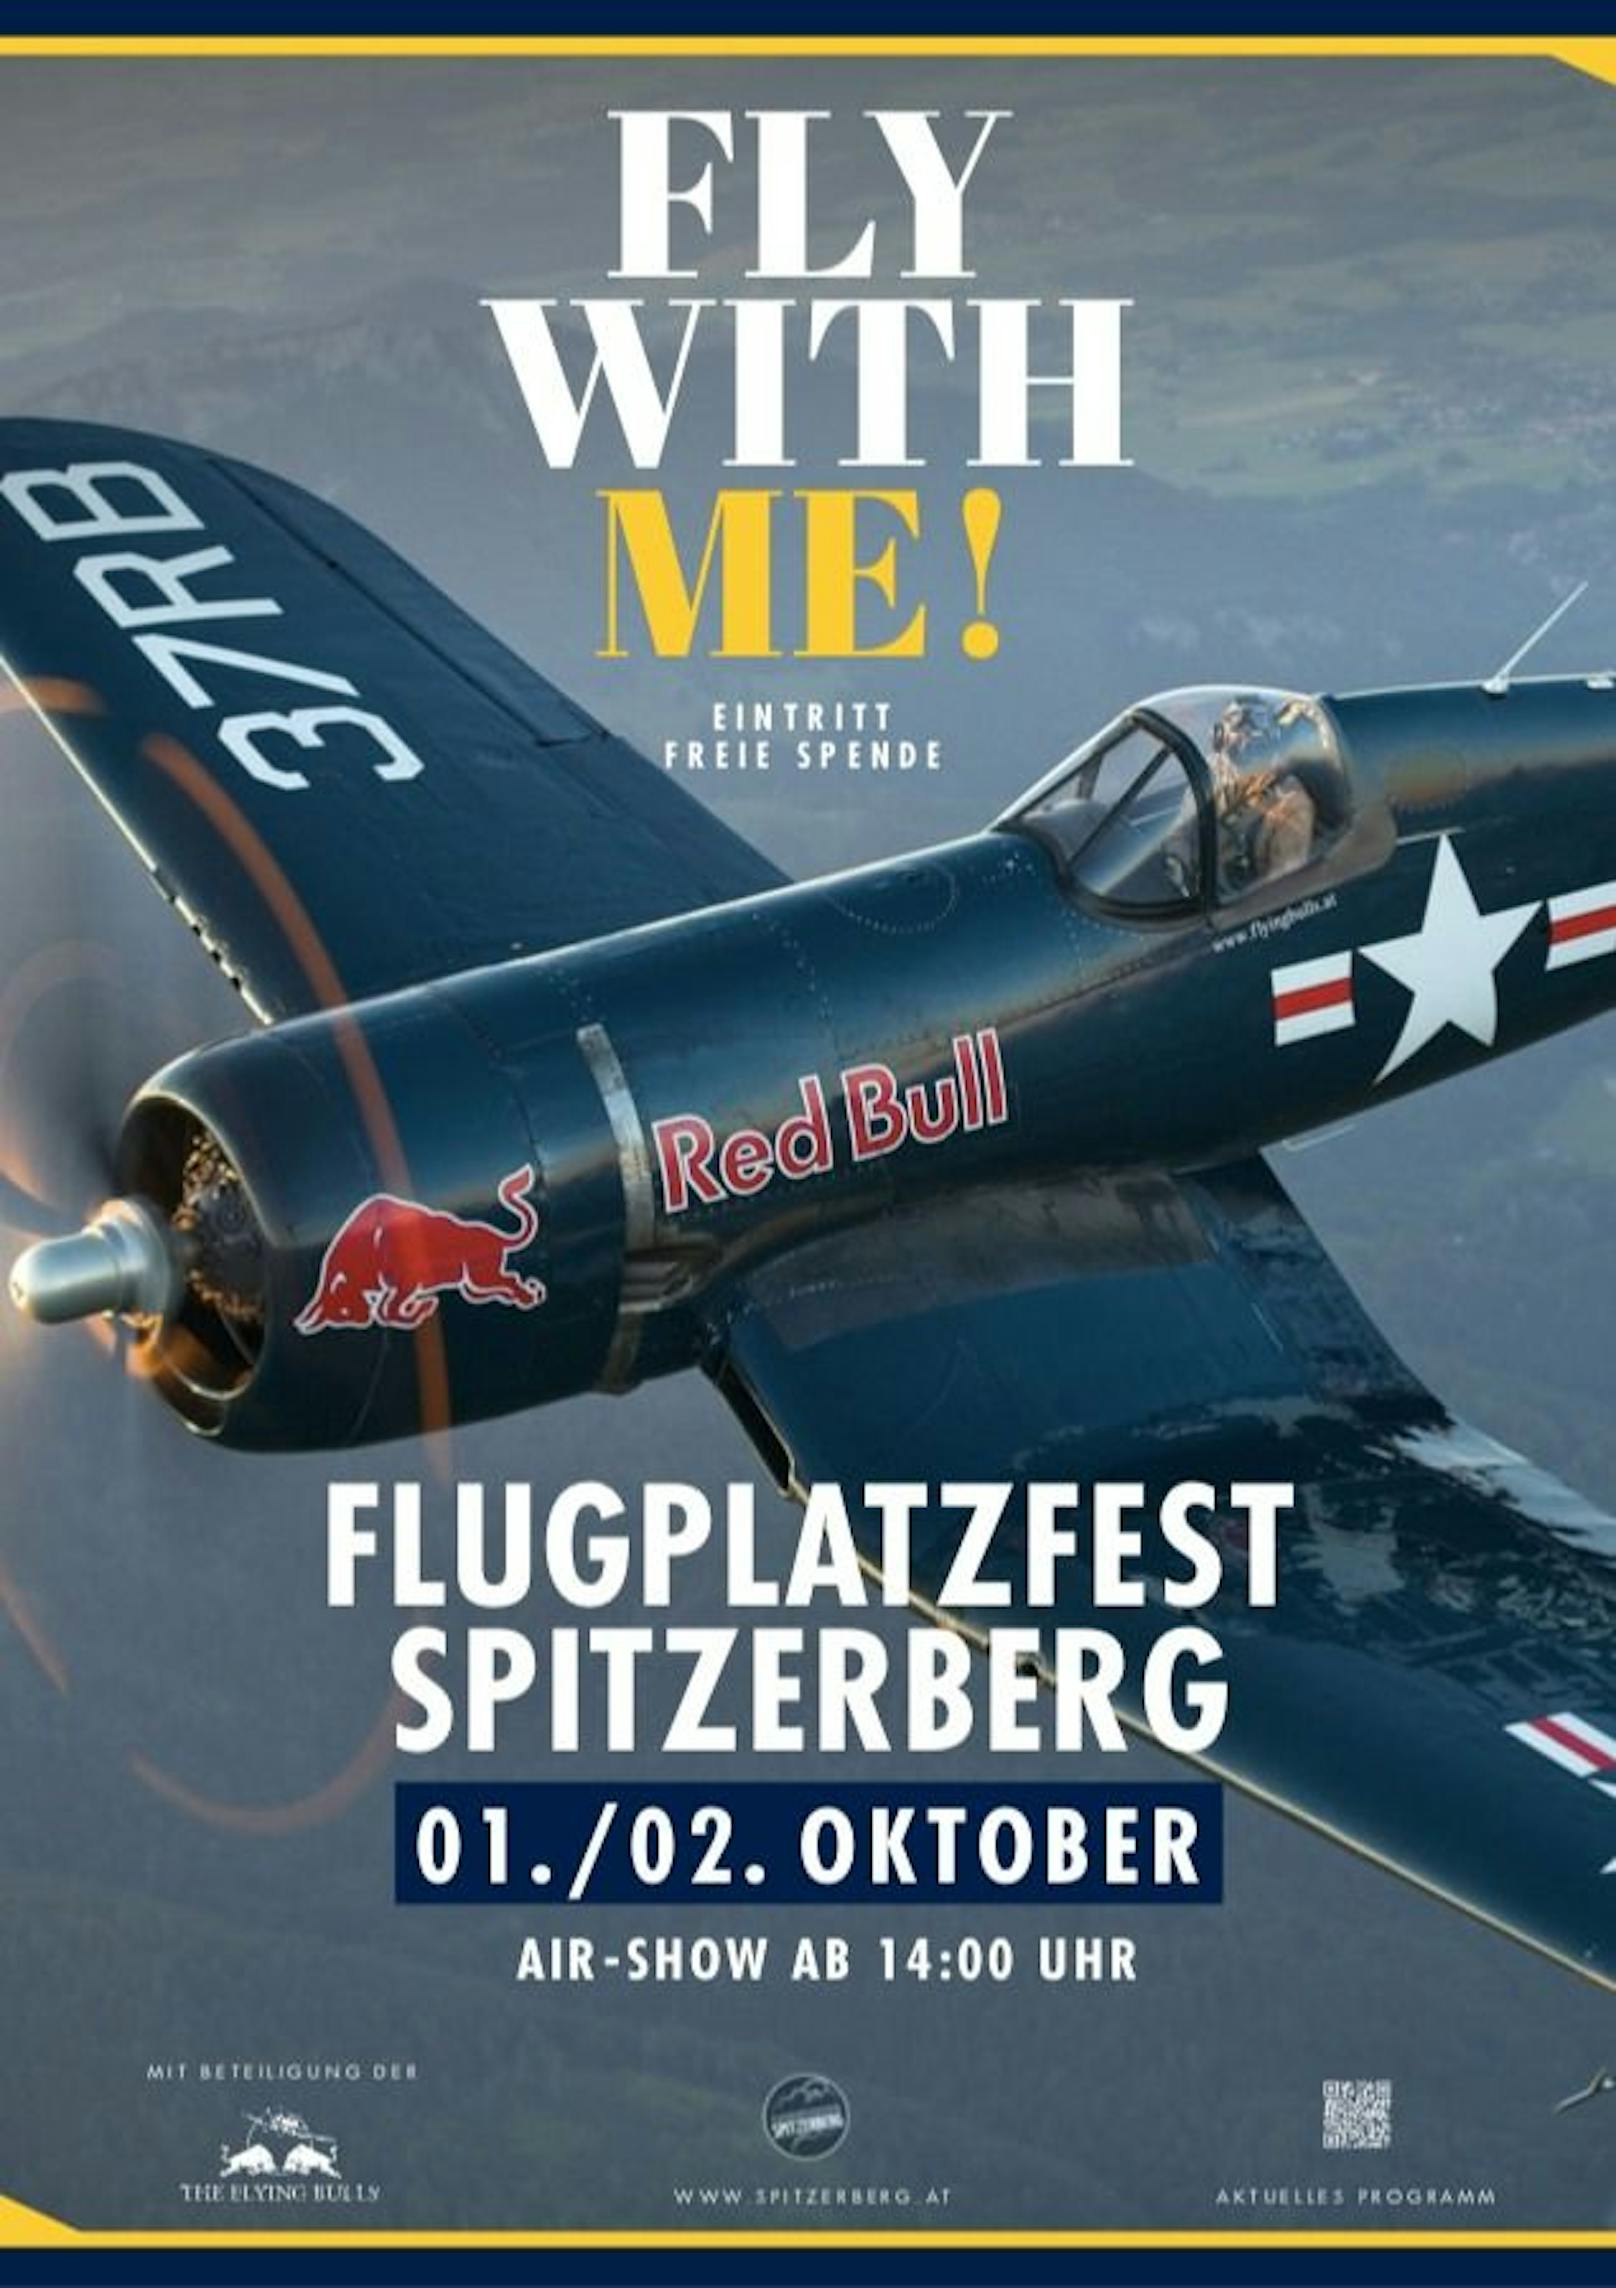 Das Flugplatzfest Spitzerberg findet am 01. und 02. Oktober statt.